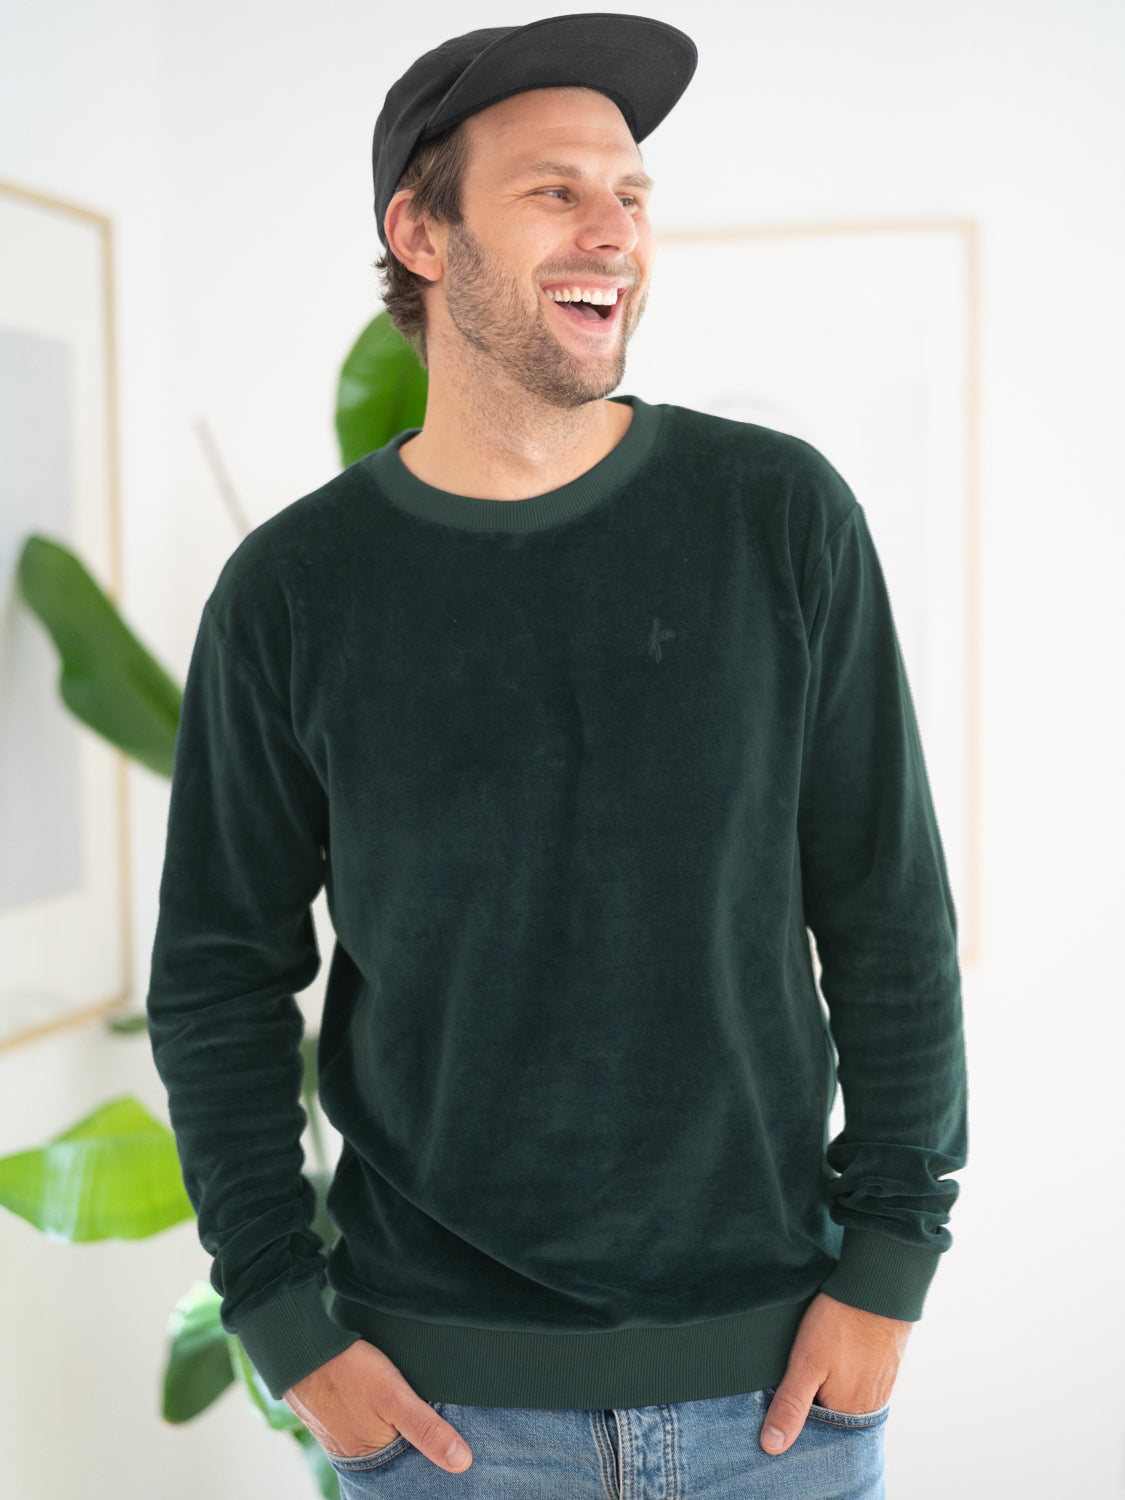 Philipp trägt unseren GOTS zertifizierten Fair Fashion FUXBAU Männer Samt Sweater in grün aus 100% Biobaumwolle, der fair und nachhaltigen bei unseren Partnern in Portugal gefertigt wird.